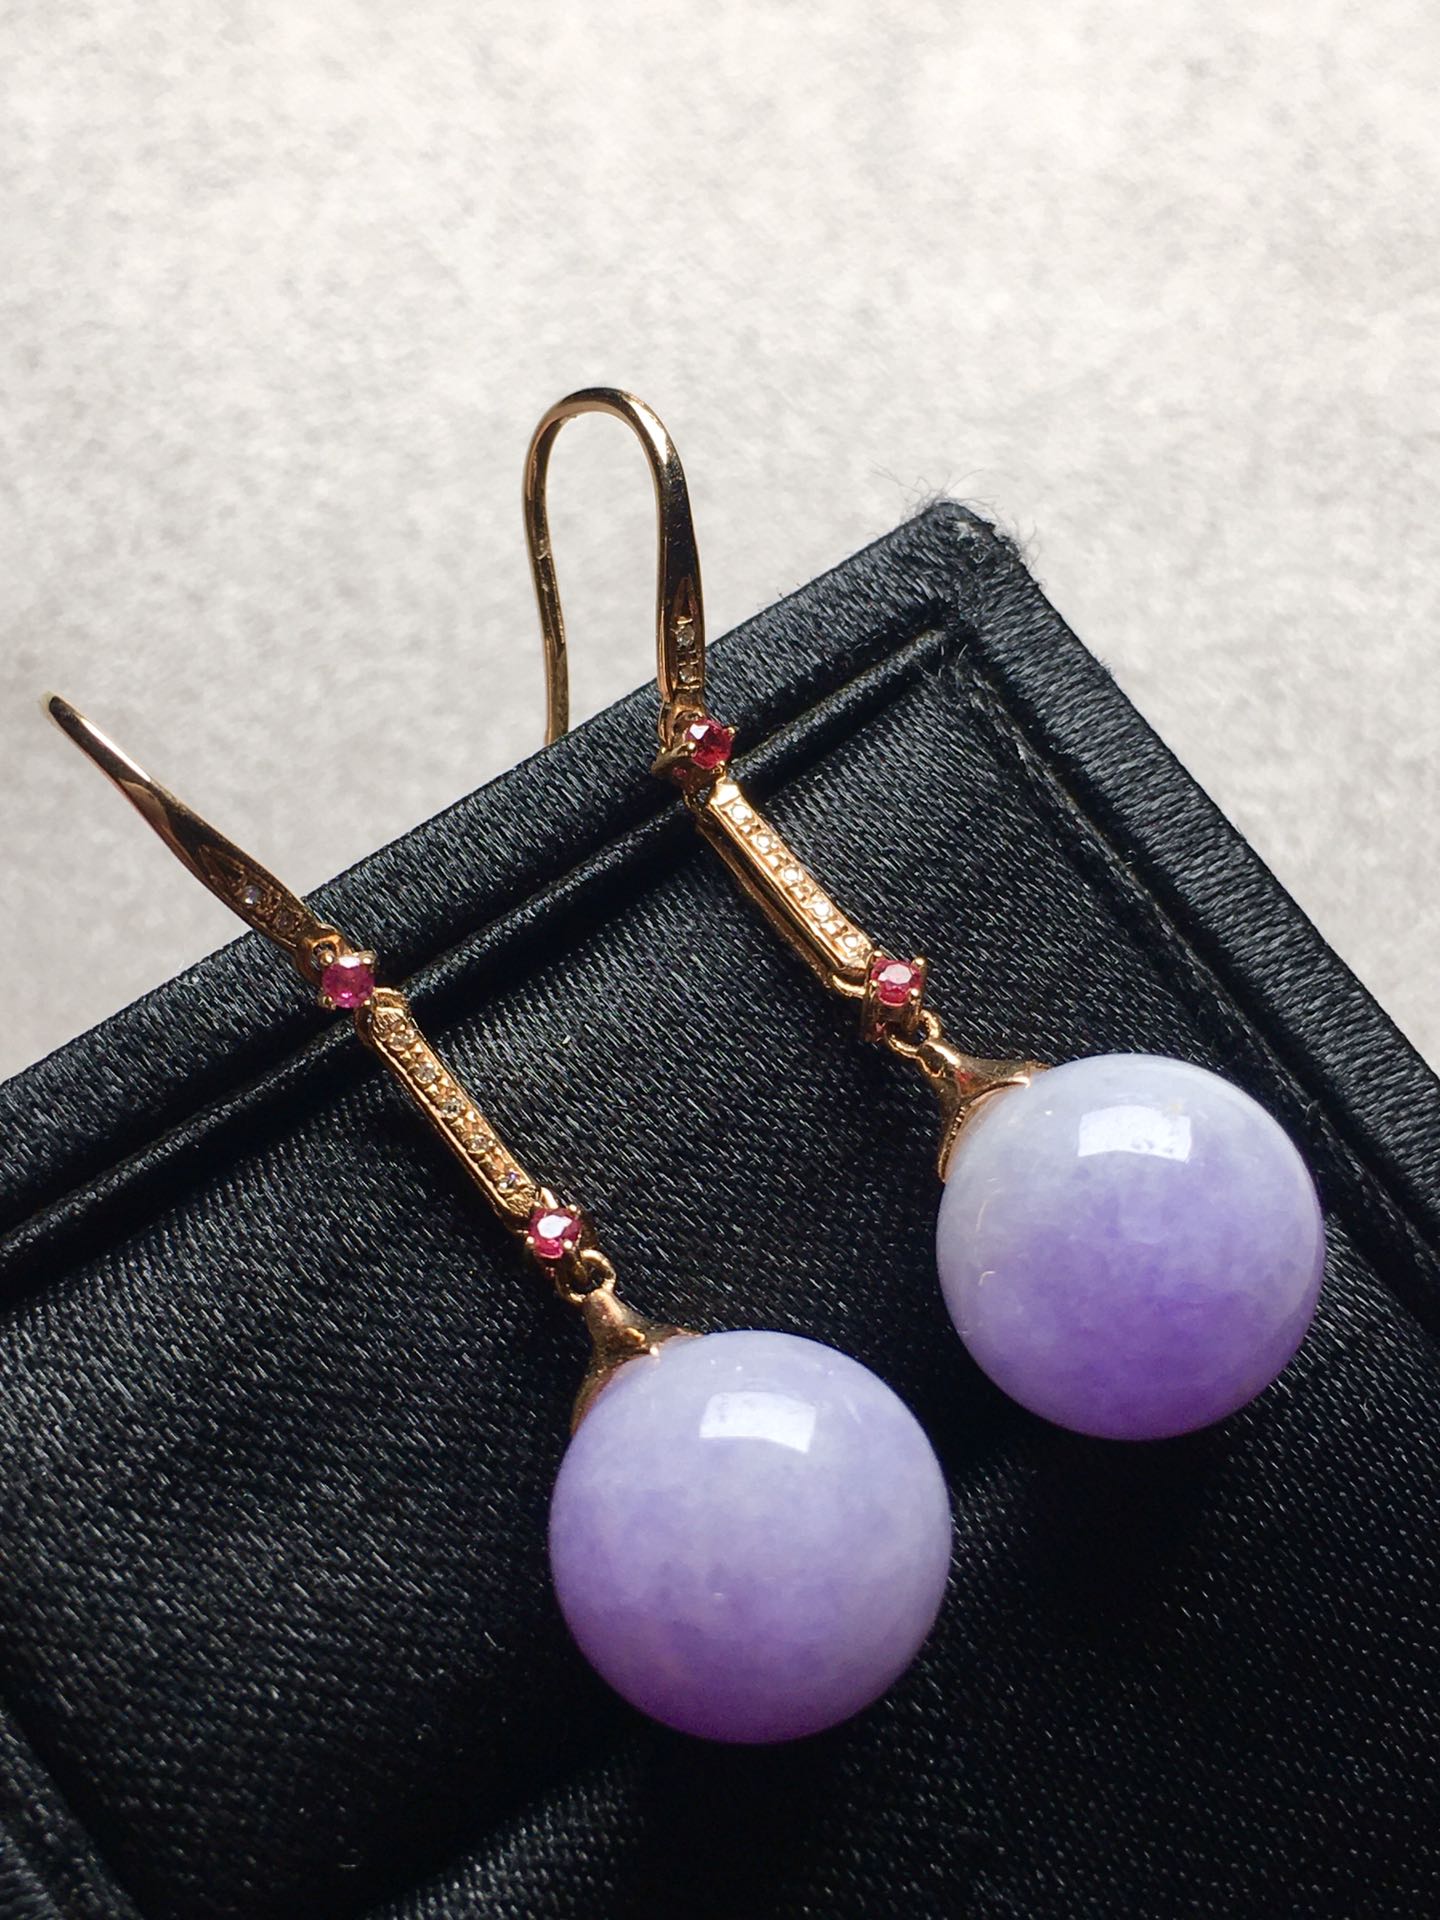 价❤紫罗兰圆珠耳环，玉质细腻，水润完美。裸石：10.8-10.8